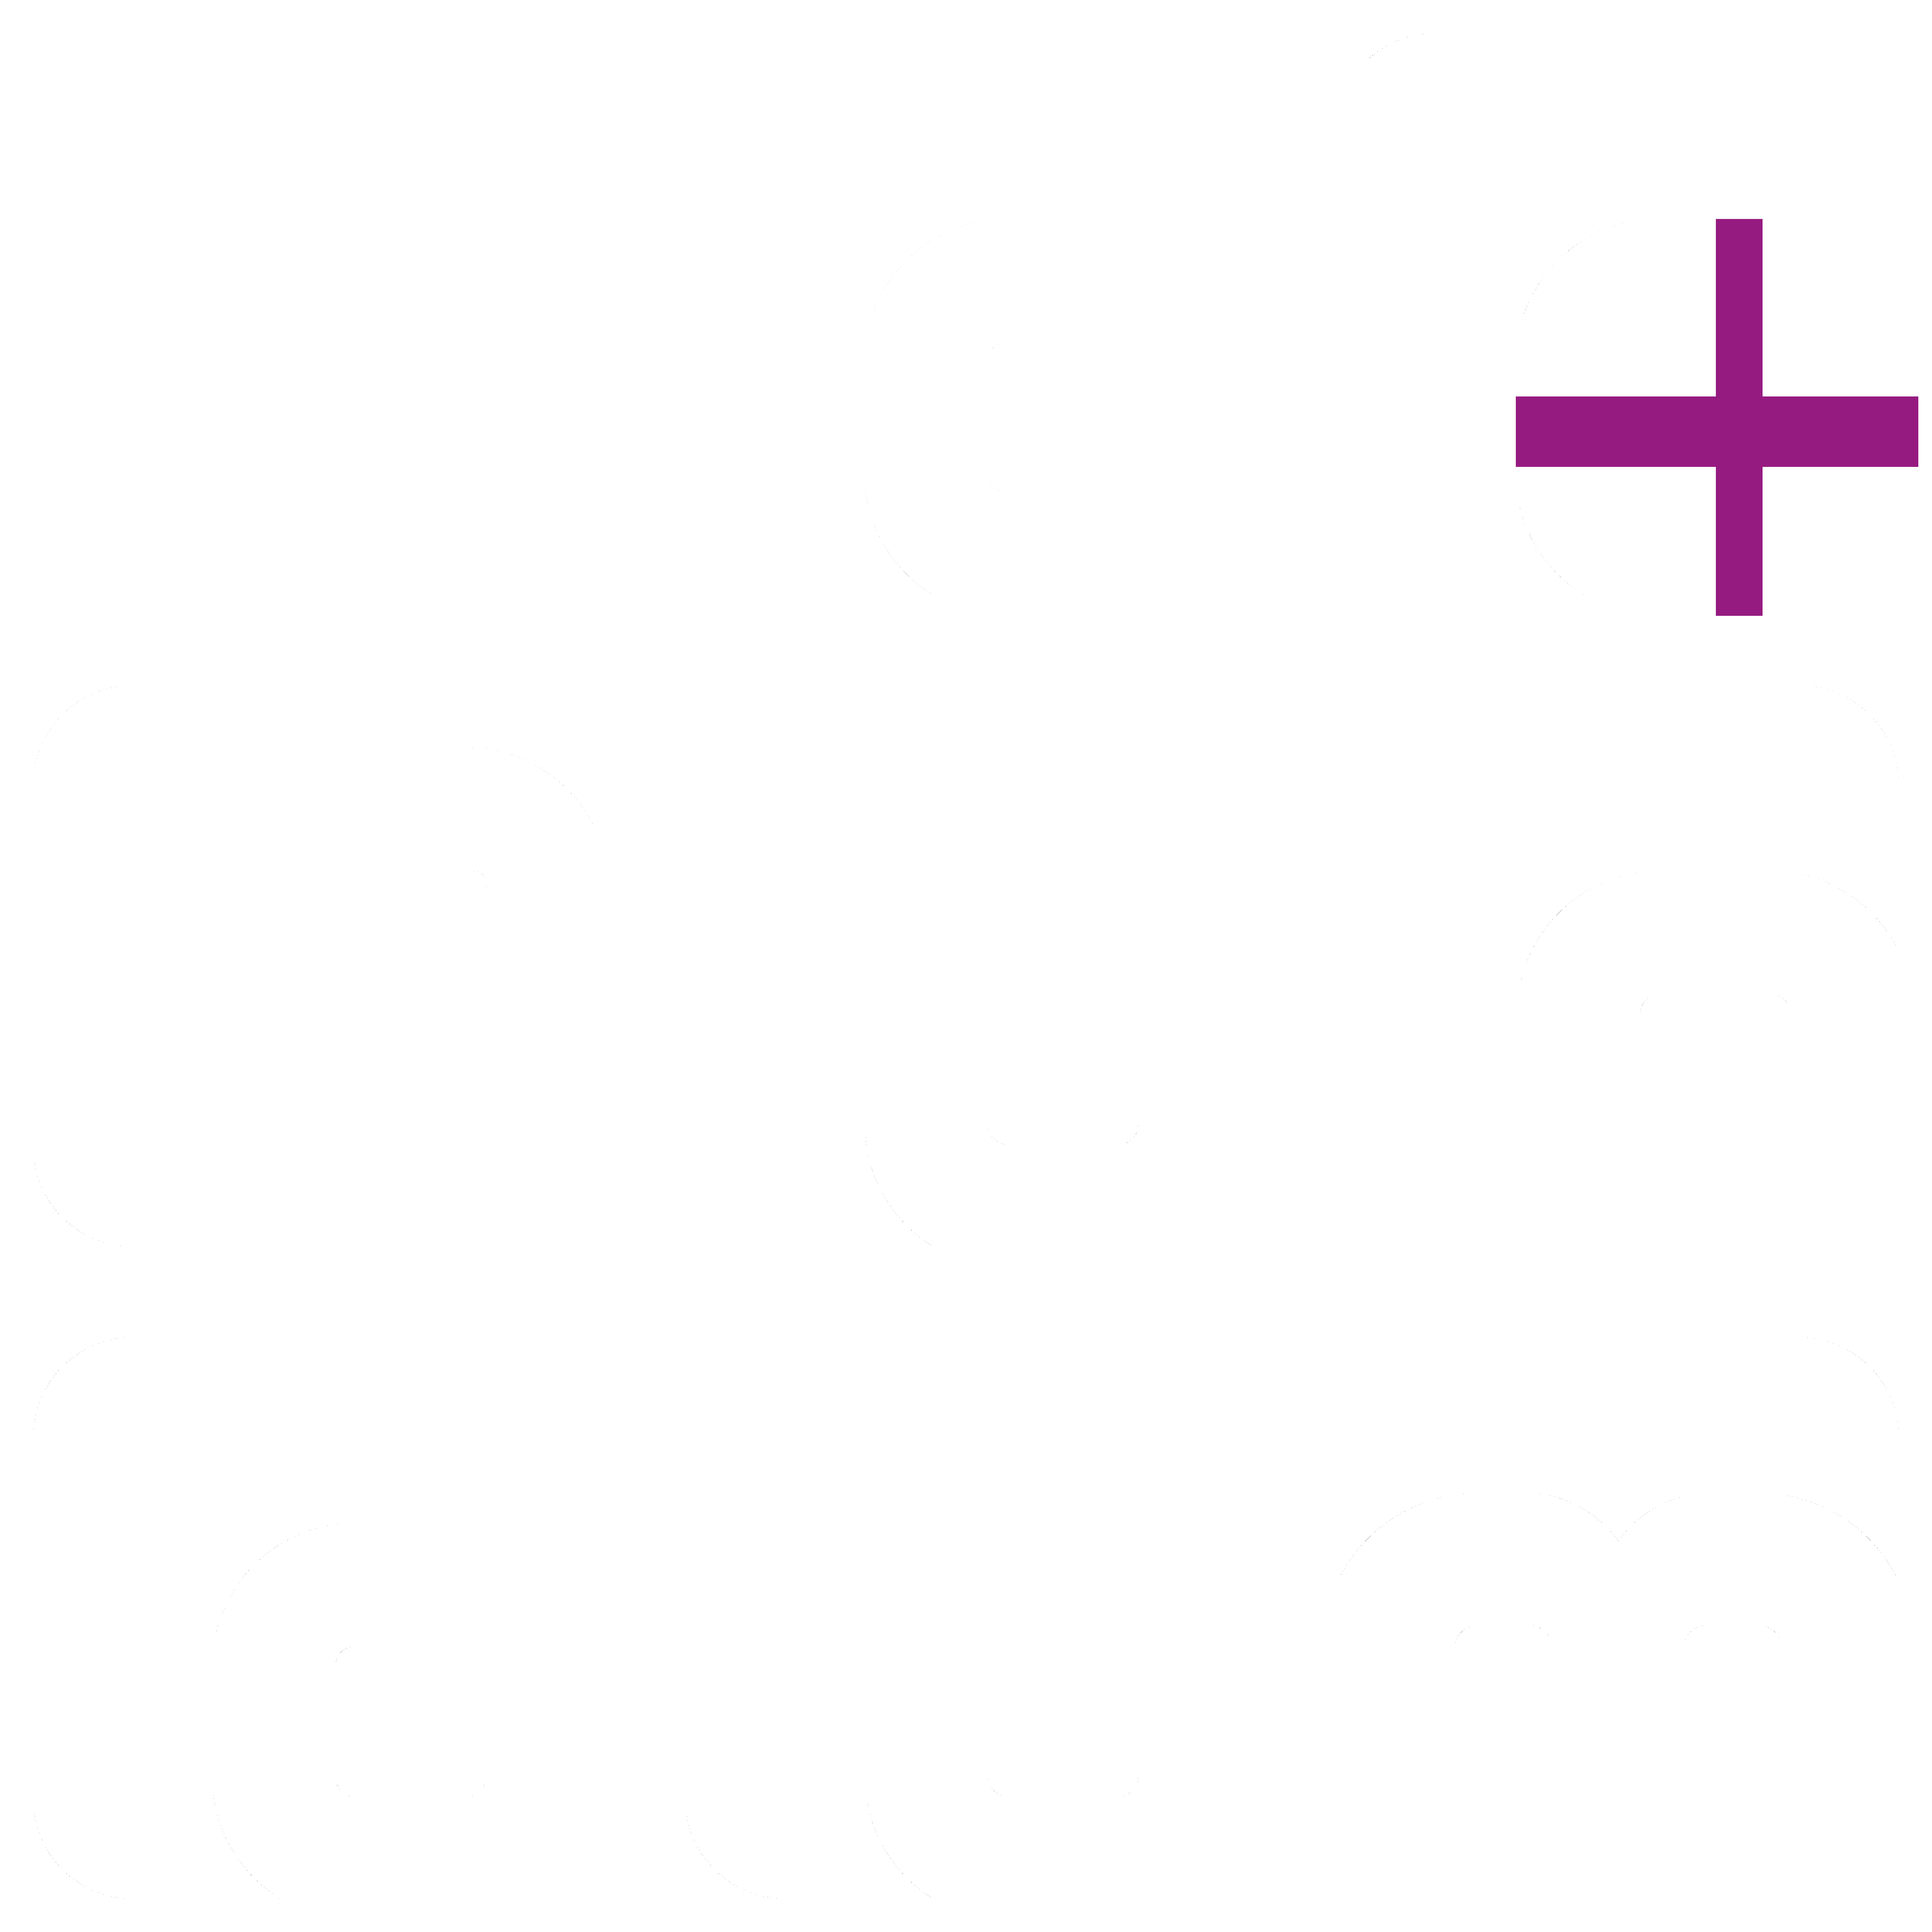 ad(d) fundum